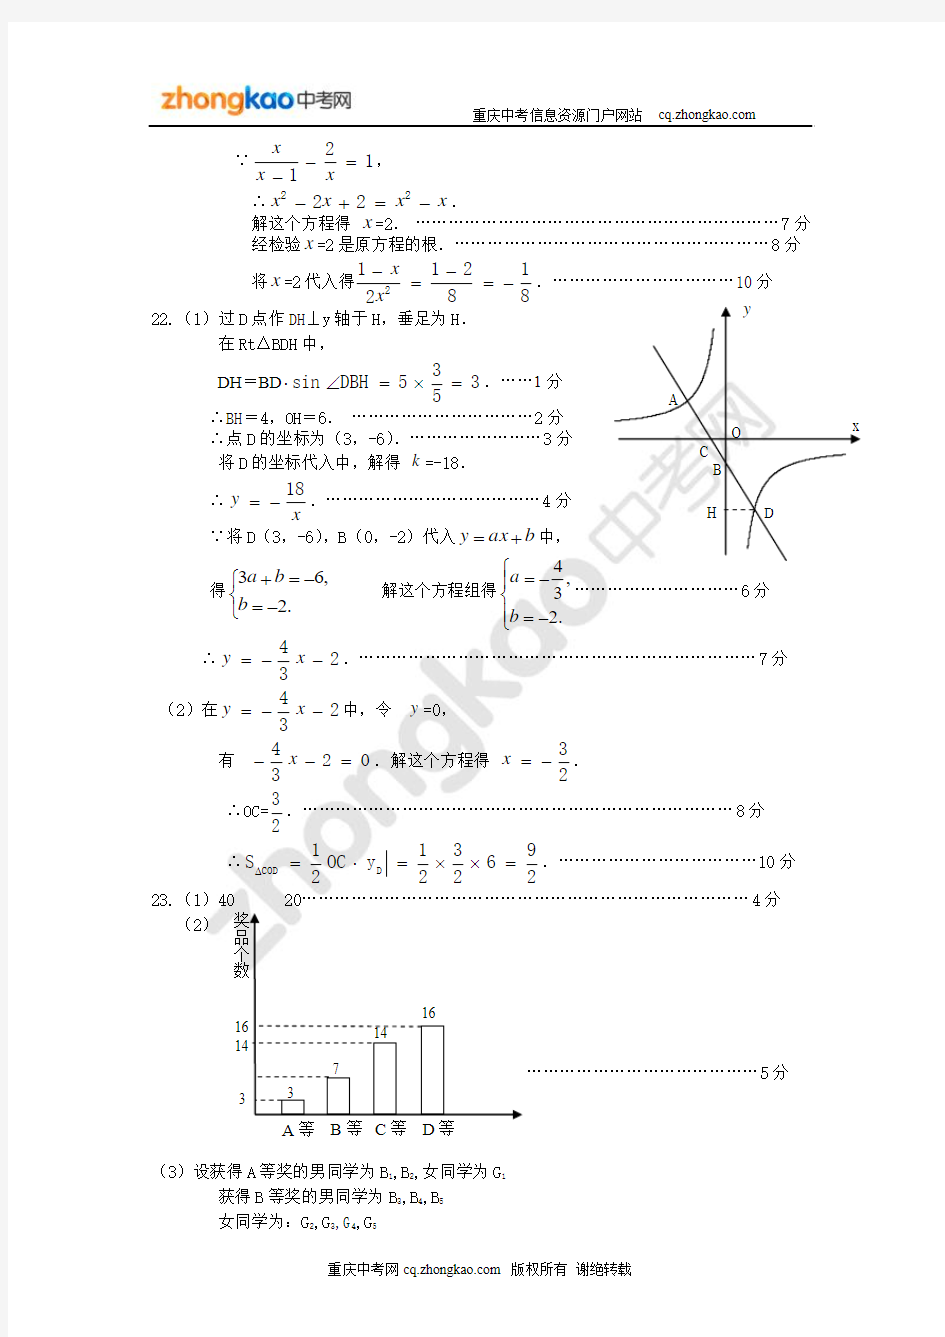 重庆一中初2012级九年级上期期中考试数学答案